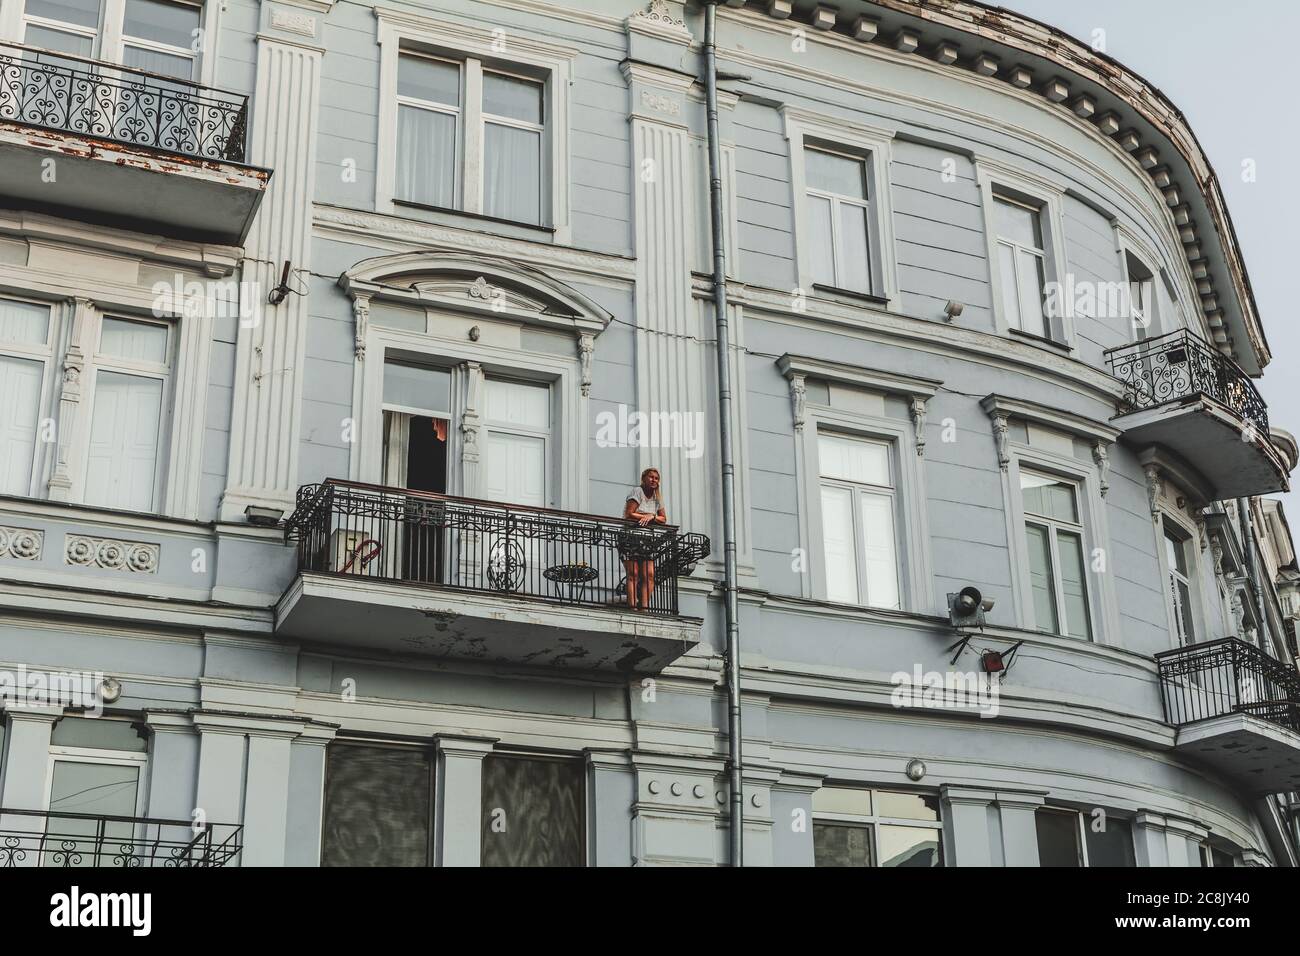 Ucraina, Odessa - 23 agosto 2019: Ragazza sul balcone di un edificio in stile neoclassicismo al tramonto. Foto Stock